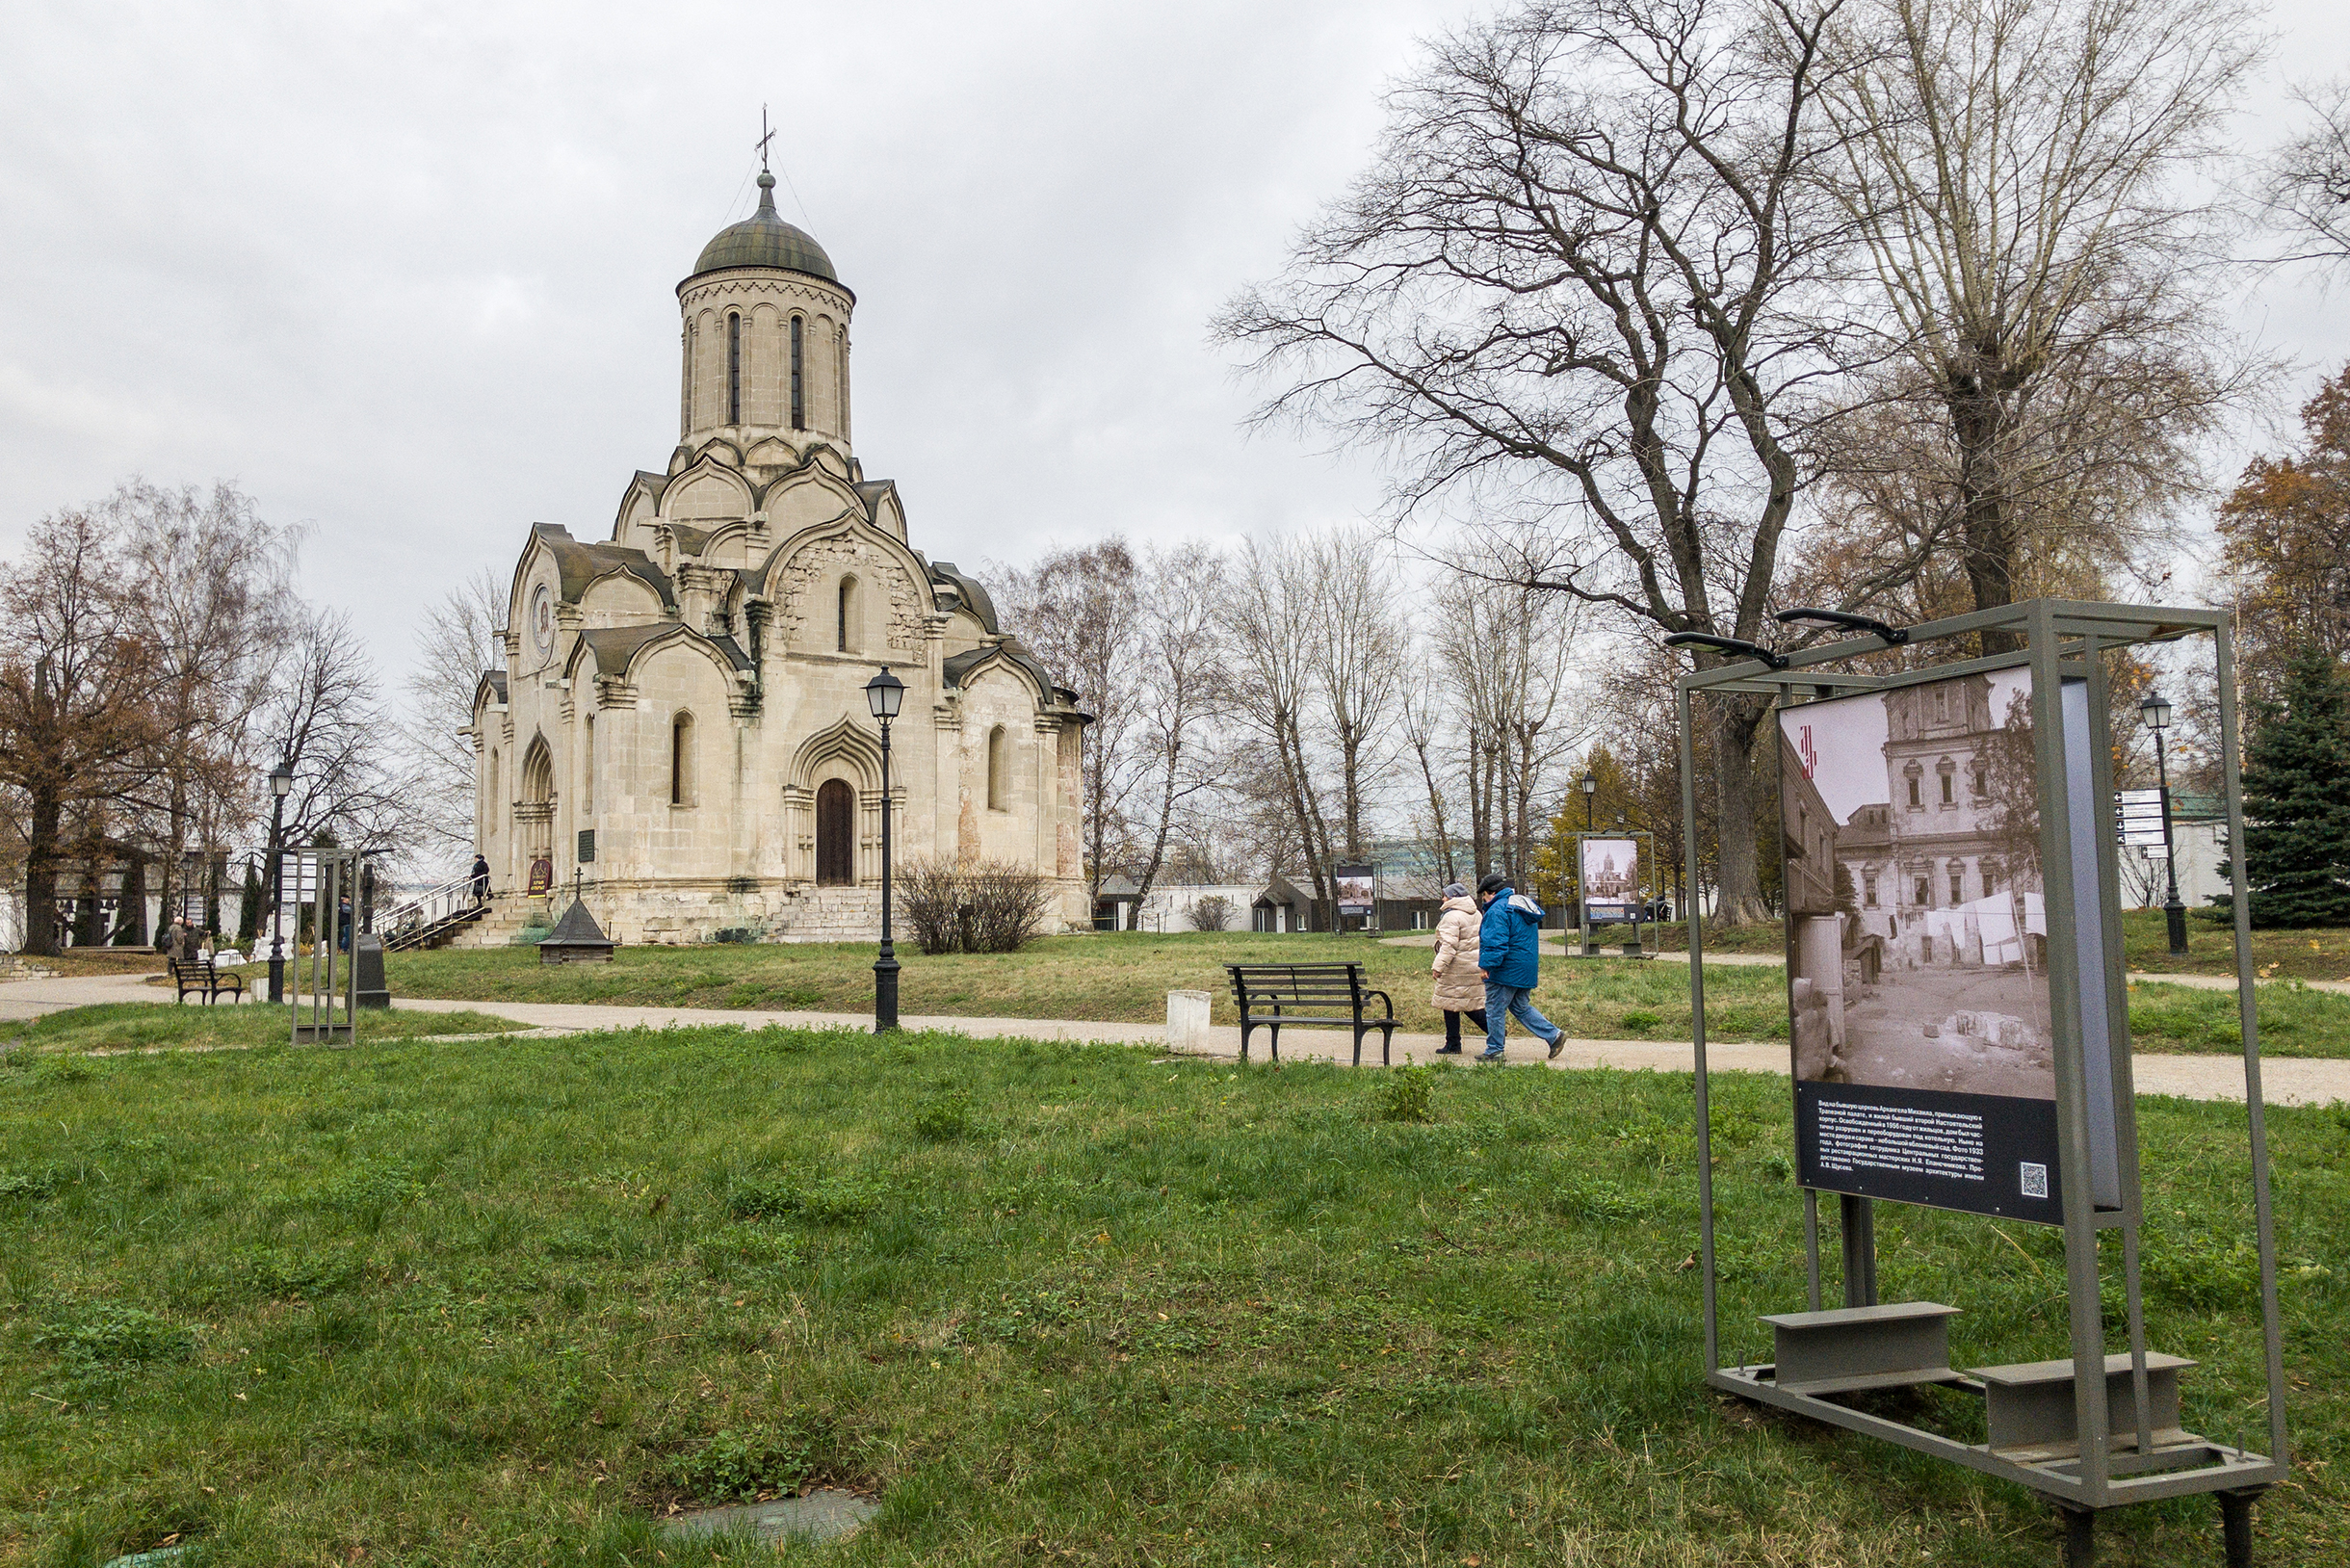 Внутри Спасского собора сохранились фрагменты росписей Андрея Рублева